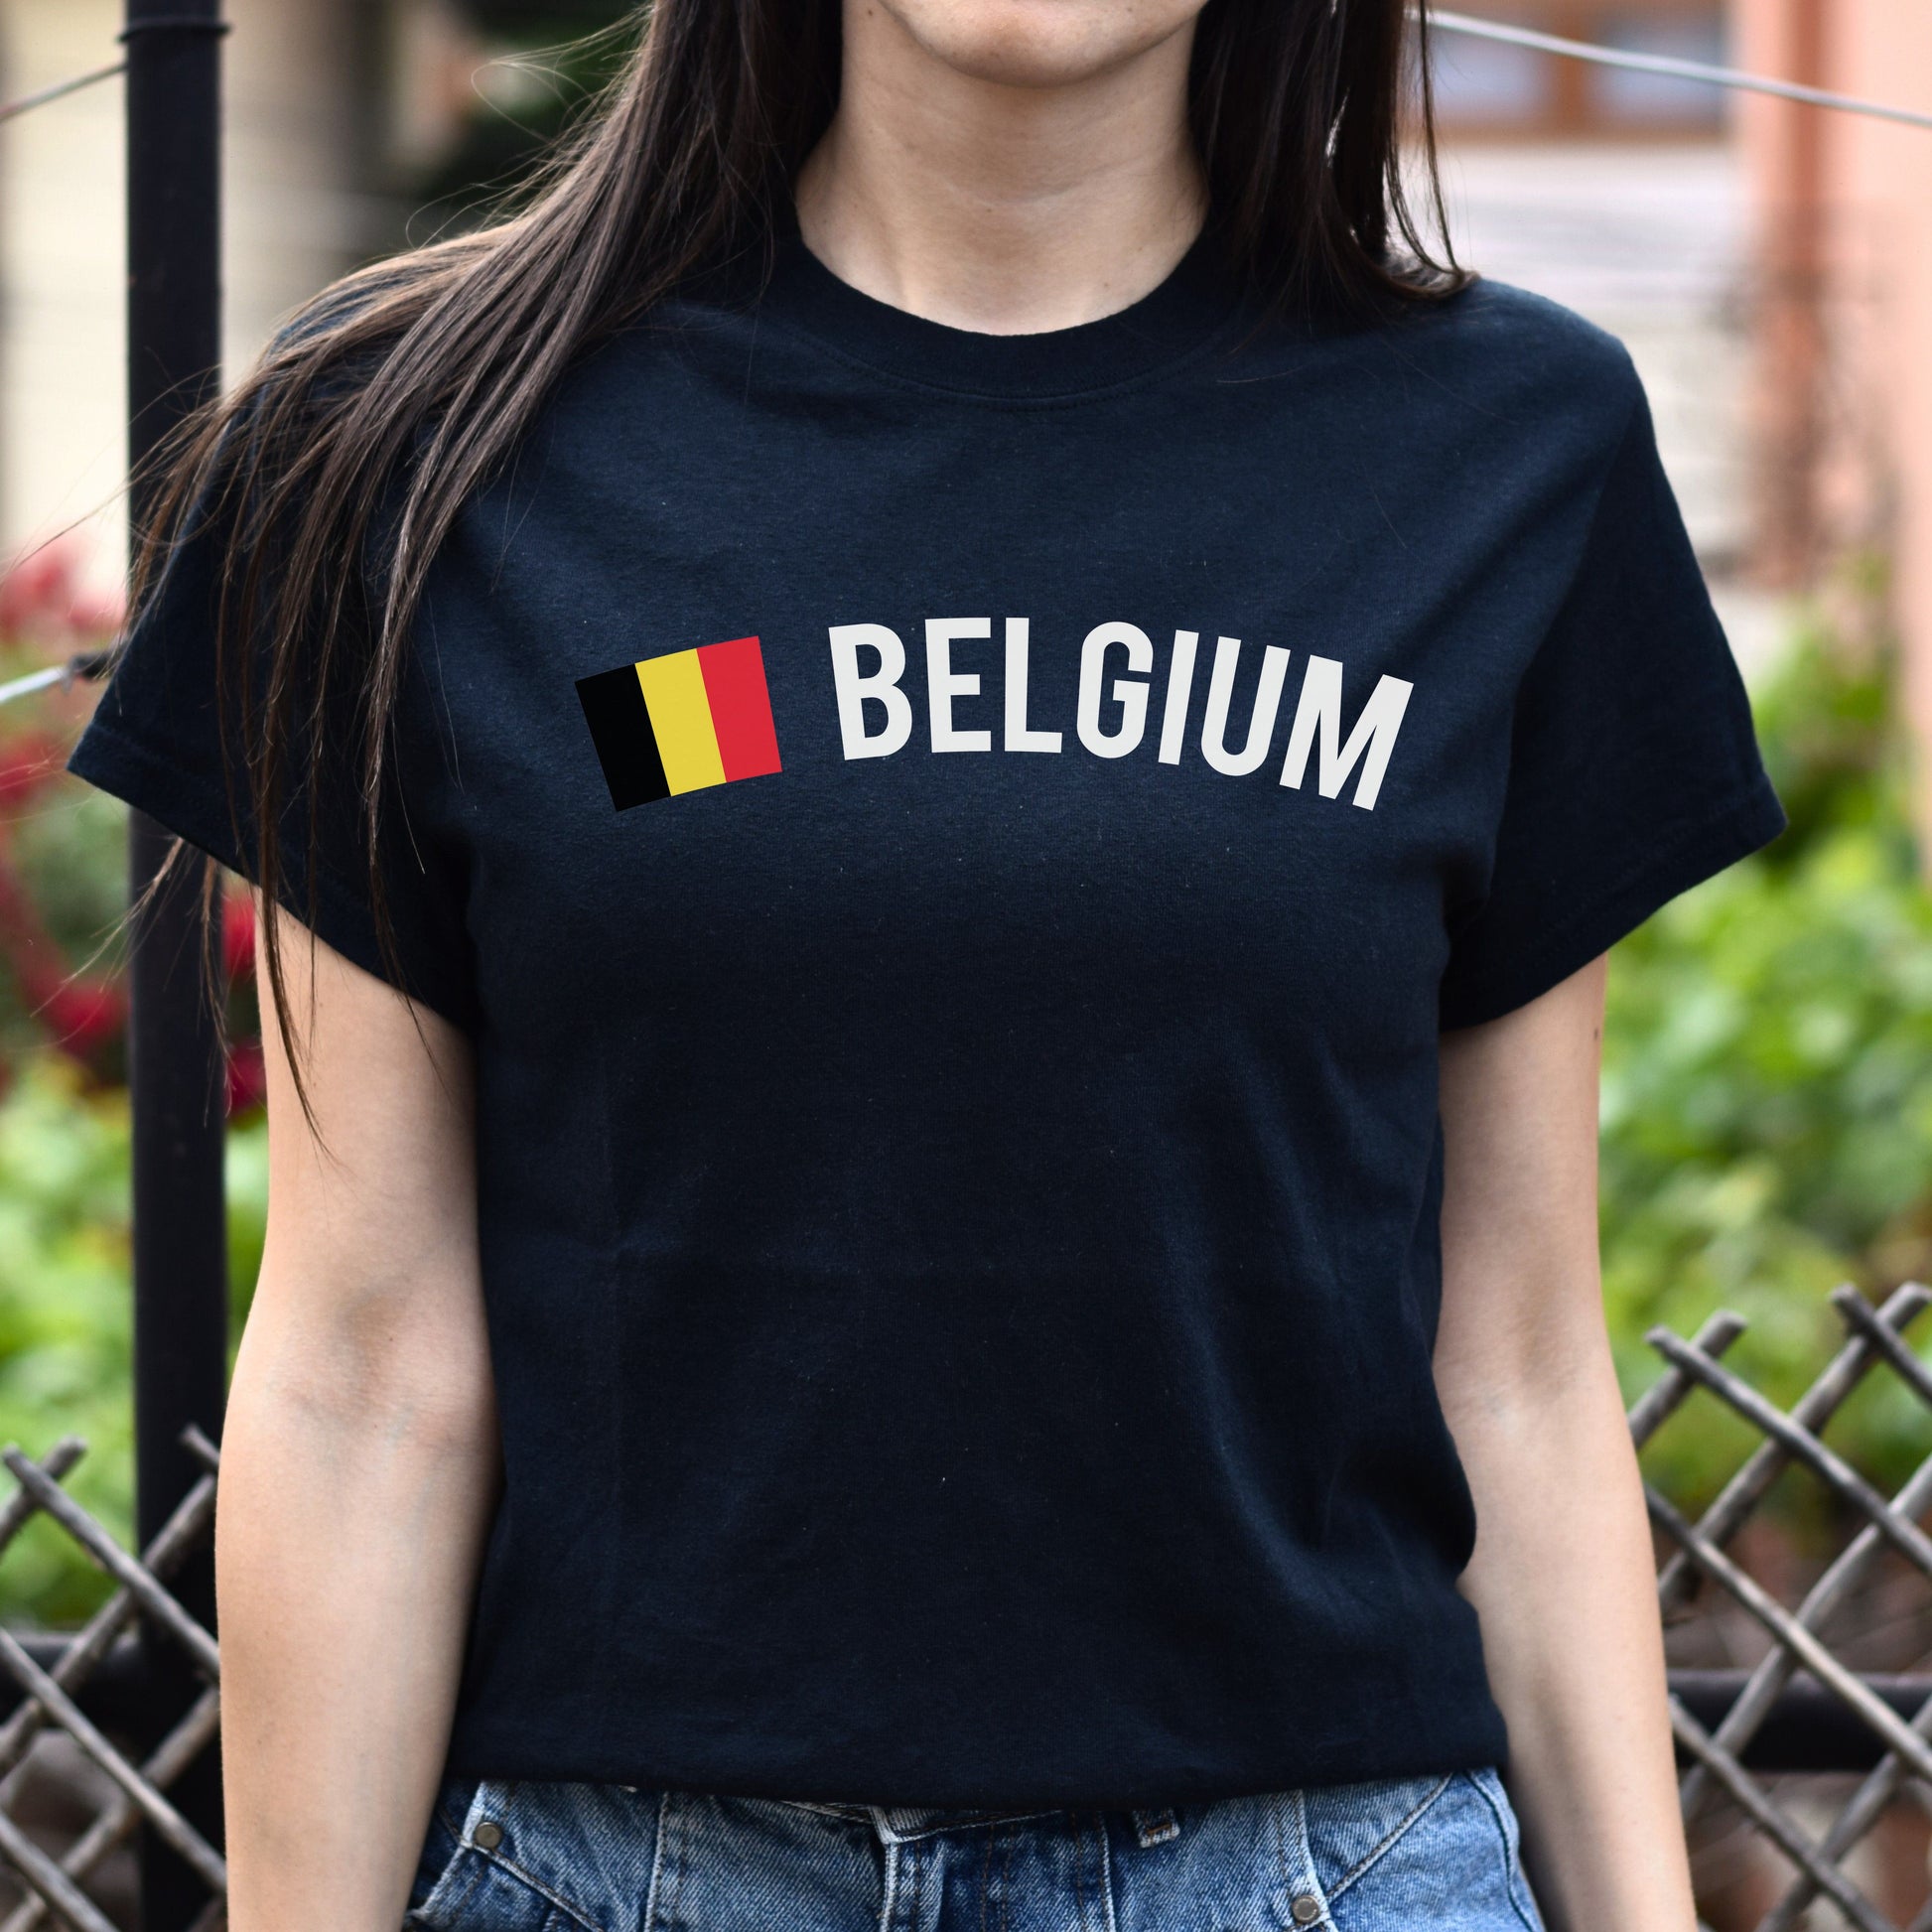 Belgium Unisex T-shirt gift Belgian flag tee Brussel White Black Dark Heather-Black-Family-Gift-Planet